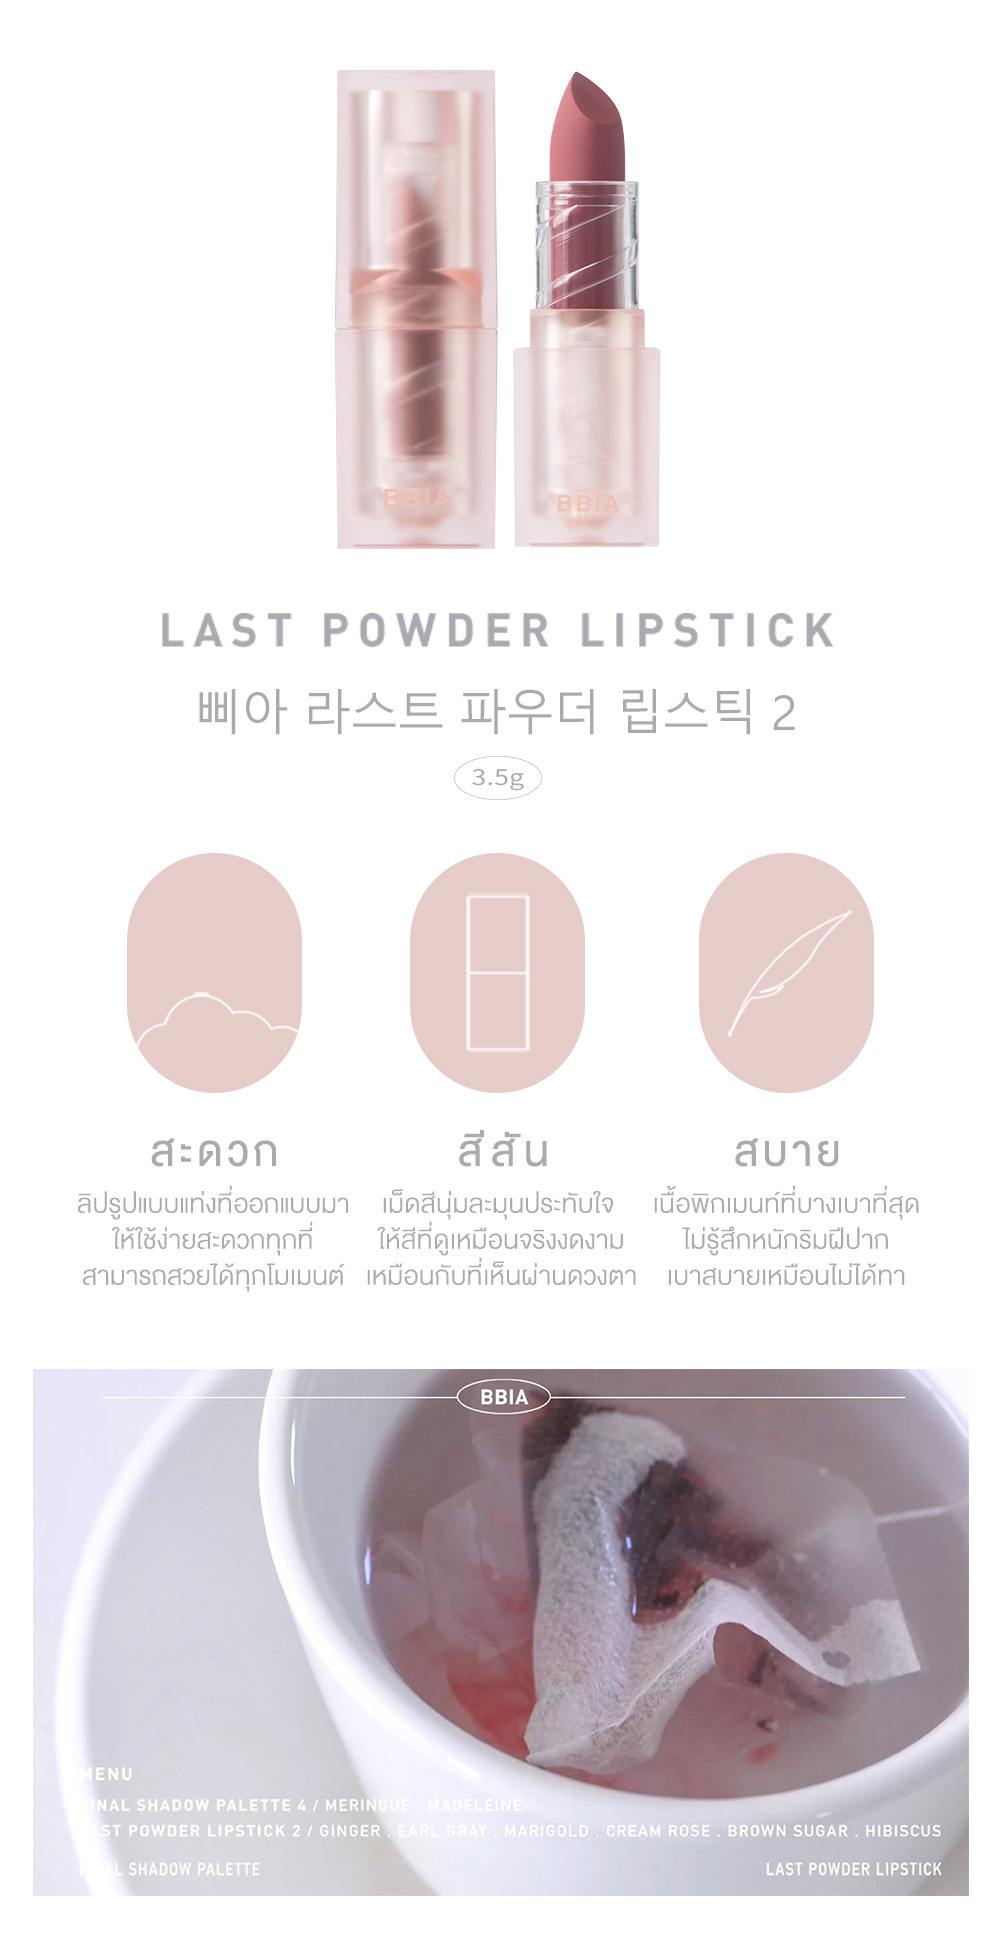 รูปภาพเพิ่มเติมของ Bbia Last Powder Lipstick Series2 and Classy Edition เปีย (ลิปสติก, เม็ดสีนุ่มละมุน)